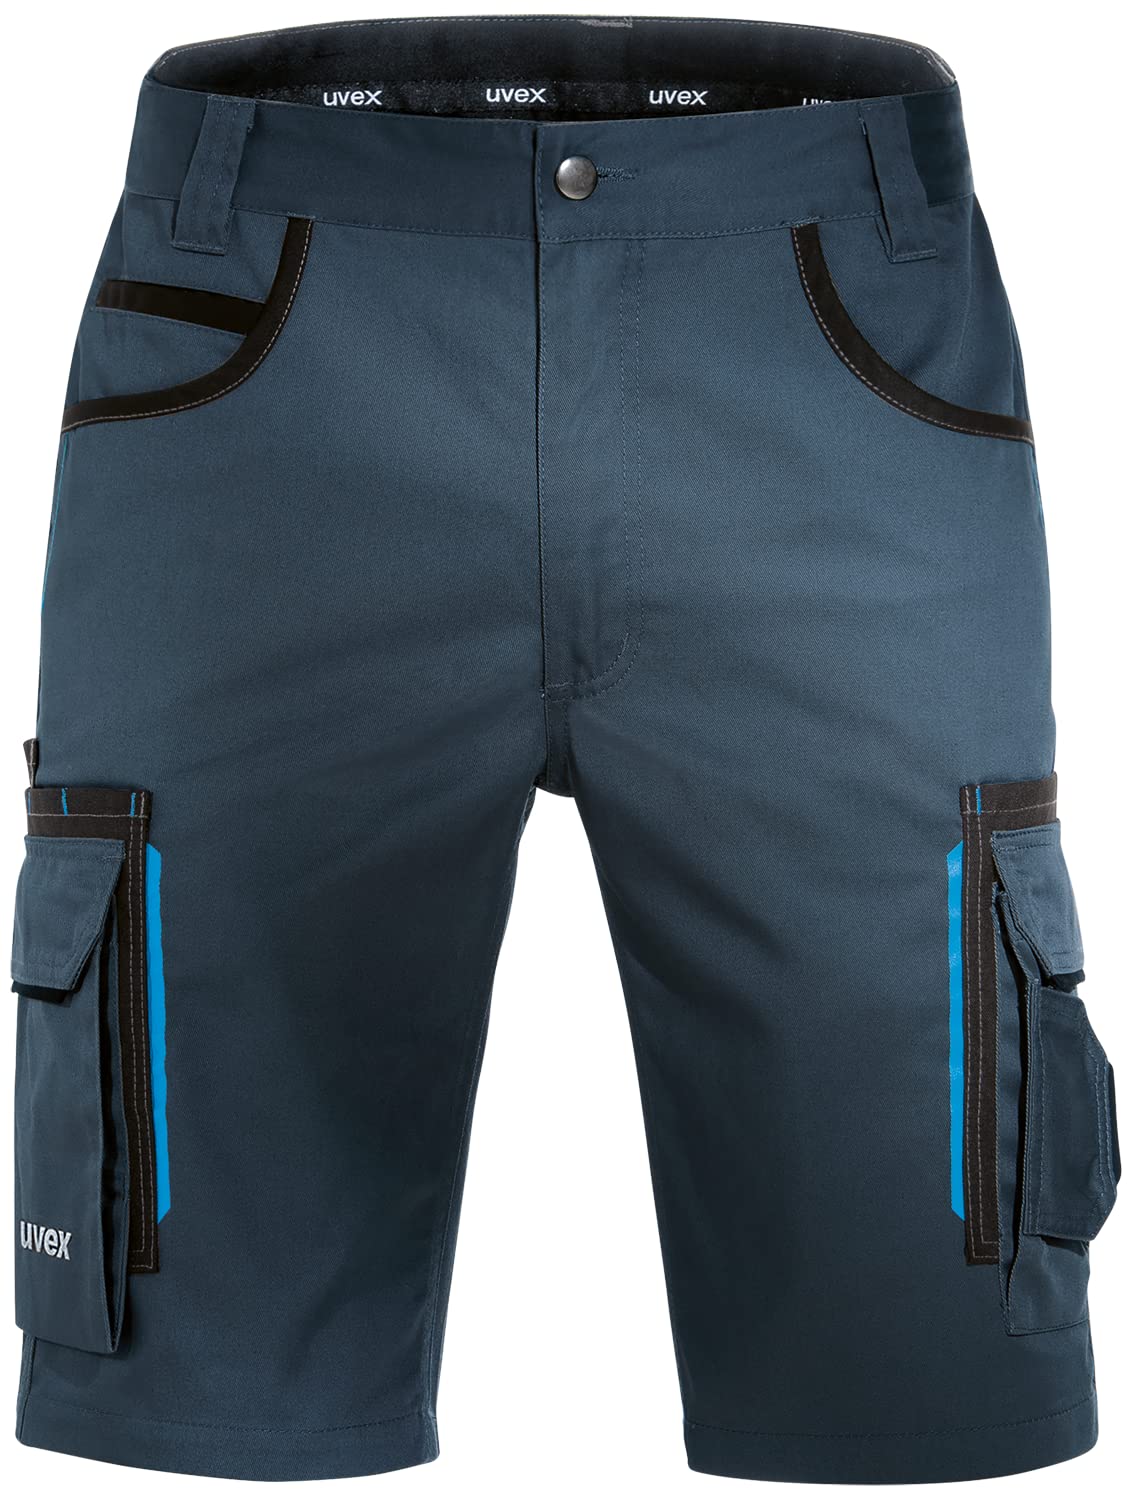 Uvex Tune-Up Arbeitshosen Männer Kurz - Shorts für die Arbeit - Dunkelblau - Gr 40W/Etikettengröße- 58